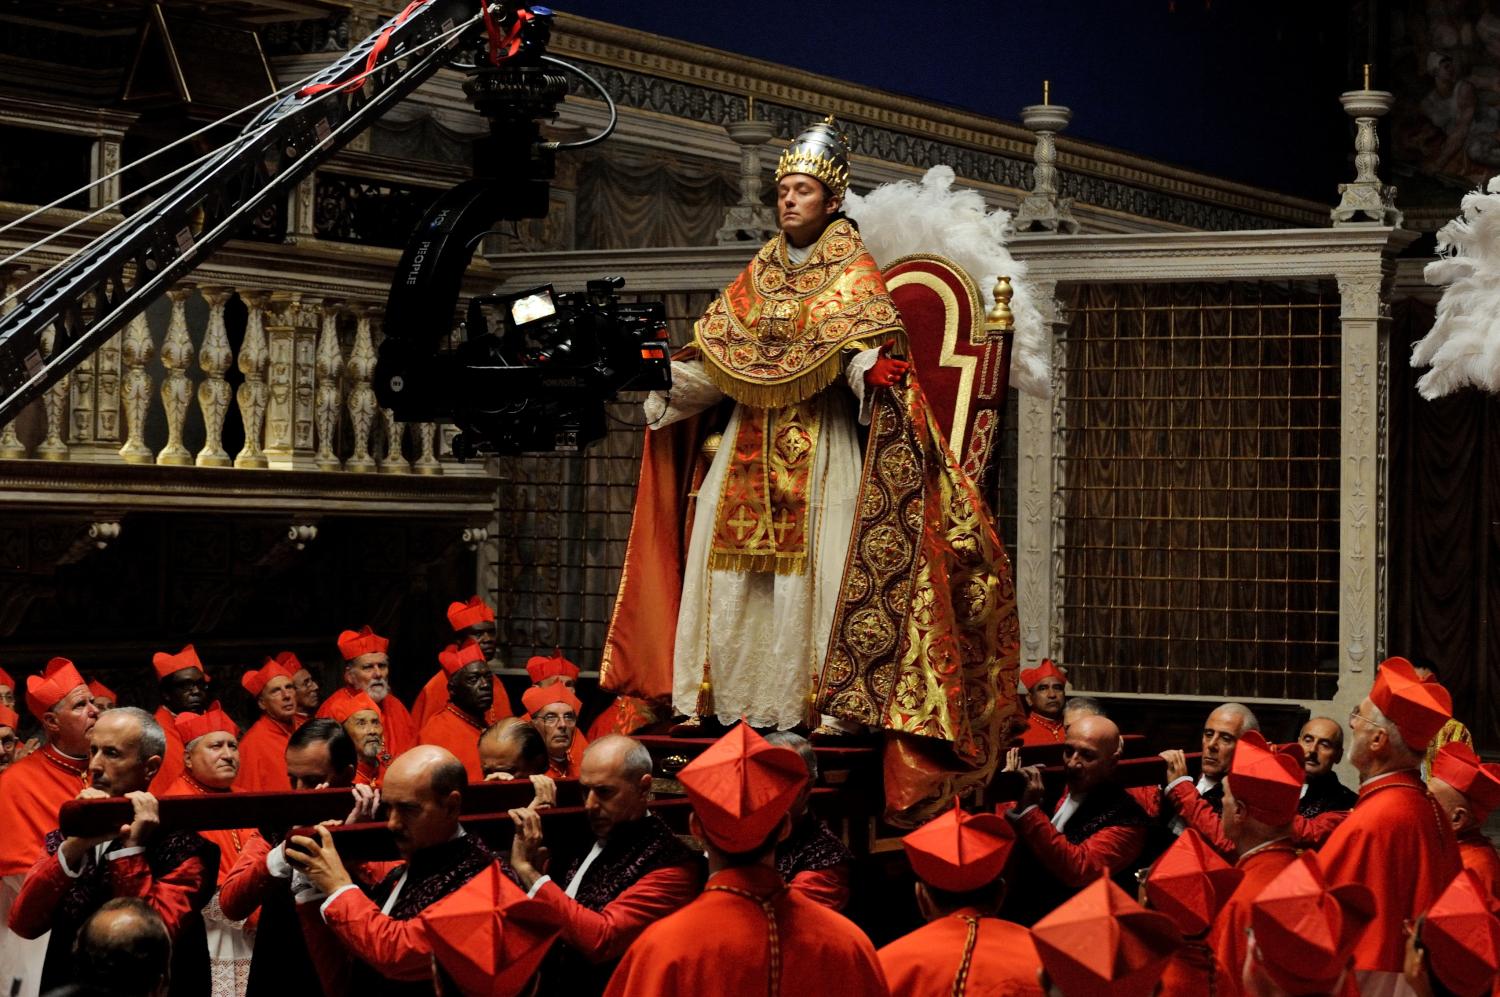 Uno scatto dal set di "The young Pope" di Paolo Sorrentino con Jude Law (foto di Gianni Fiorito)